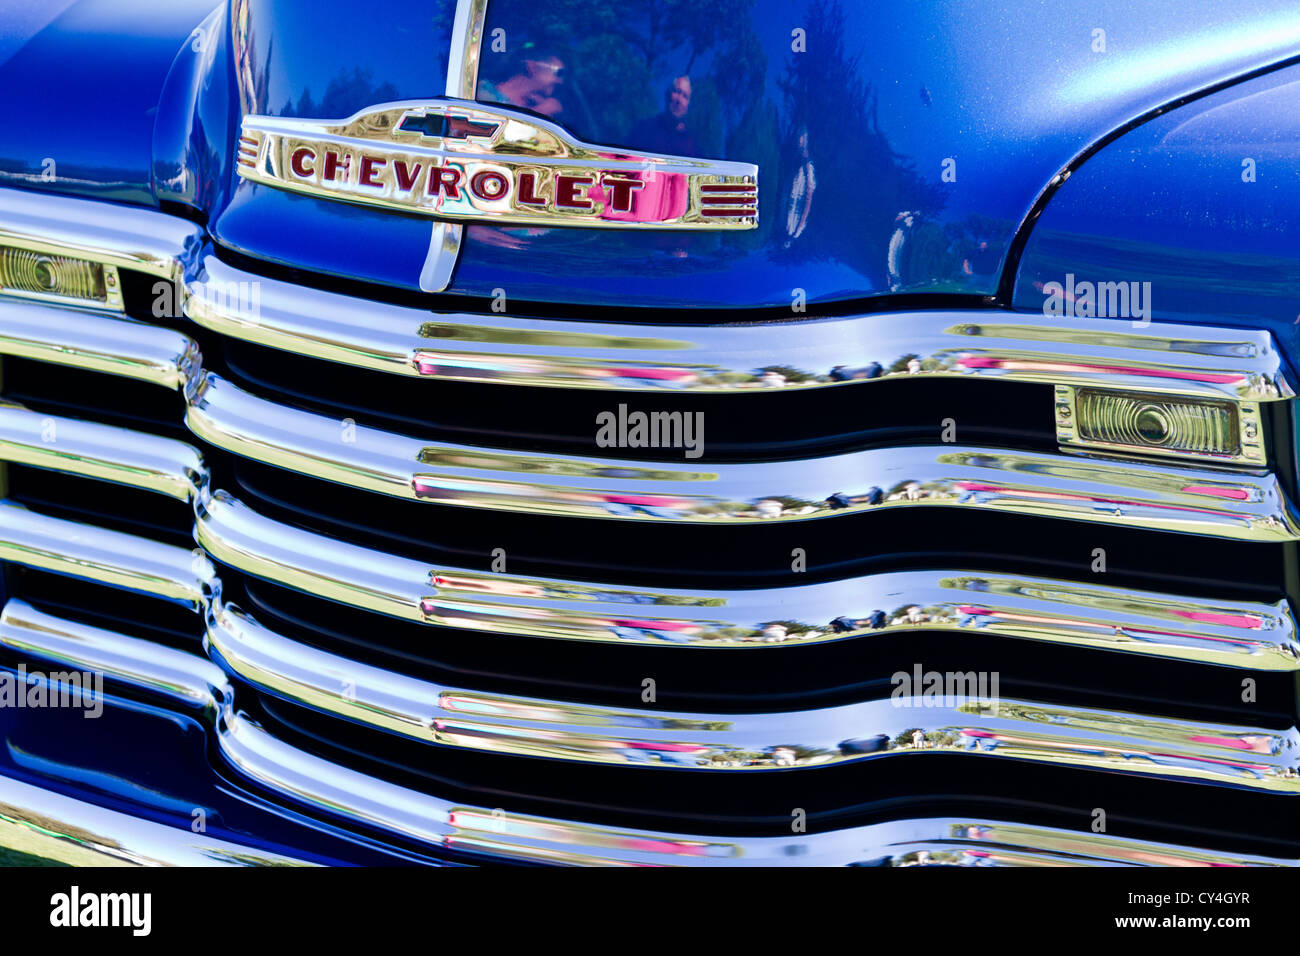 Détail de l'extrémité avant d'un camion Chevrolet 1952 panneau personnalisé illustré en car show à Goleta, Californie Banque D'Images